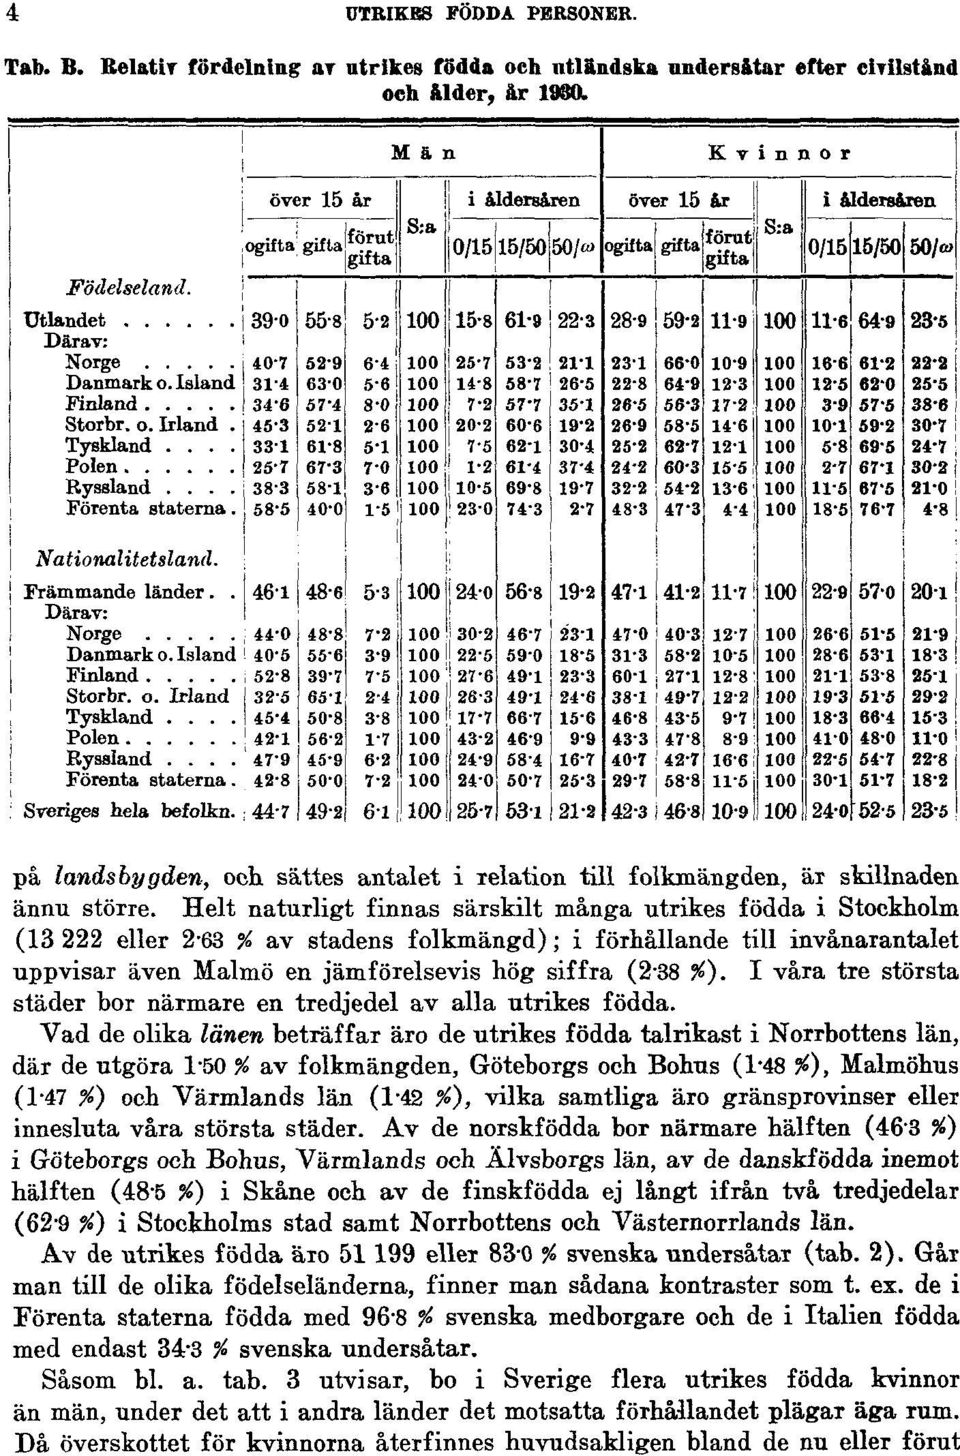 Helt naturligt finnas särskilt många utrikes födda i Stockholm (13 222 eller 2-63 % av stadens folkmängd); i förhållande till invånarantalet uppvisar även Malmö en jämförelsevis hög siffra (2-38 %).